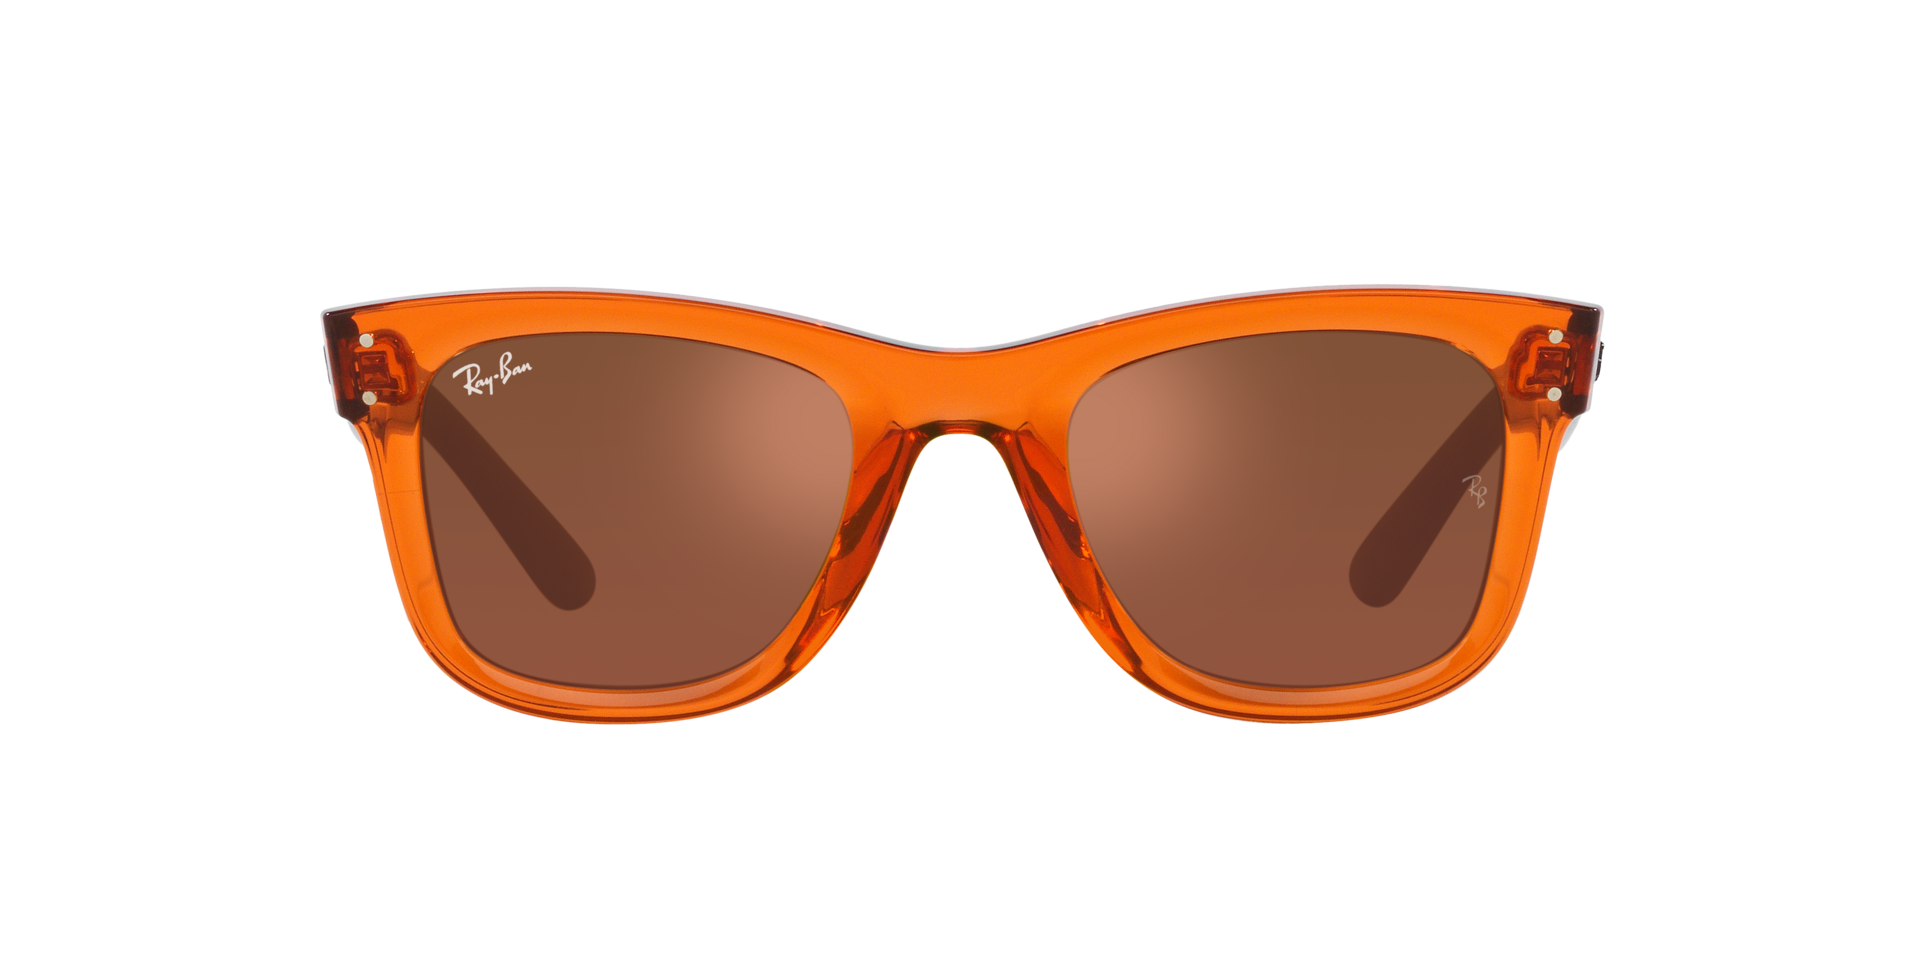 Das Bild zeigt die Sonnenbrille  0RBR0502S 6712GM von der Marke Ray Ban in transparent orange.